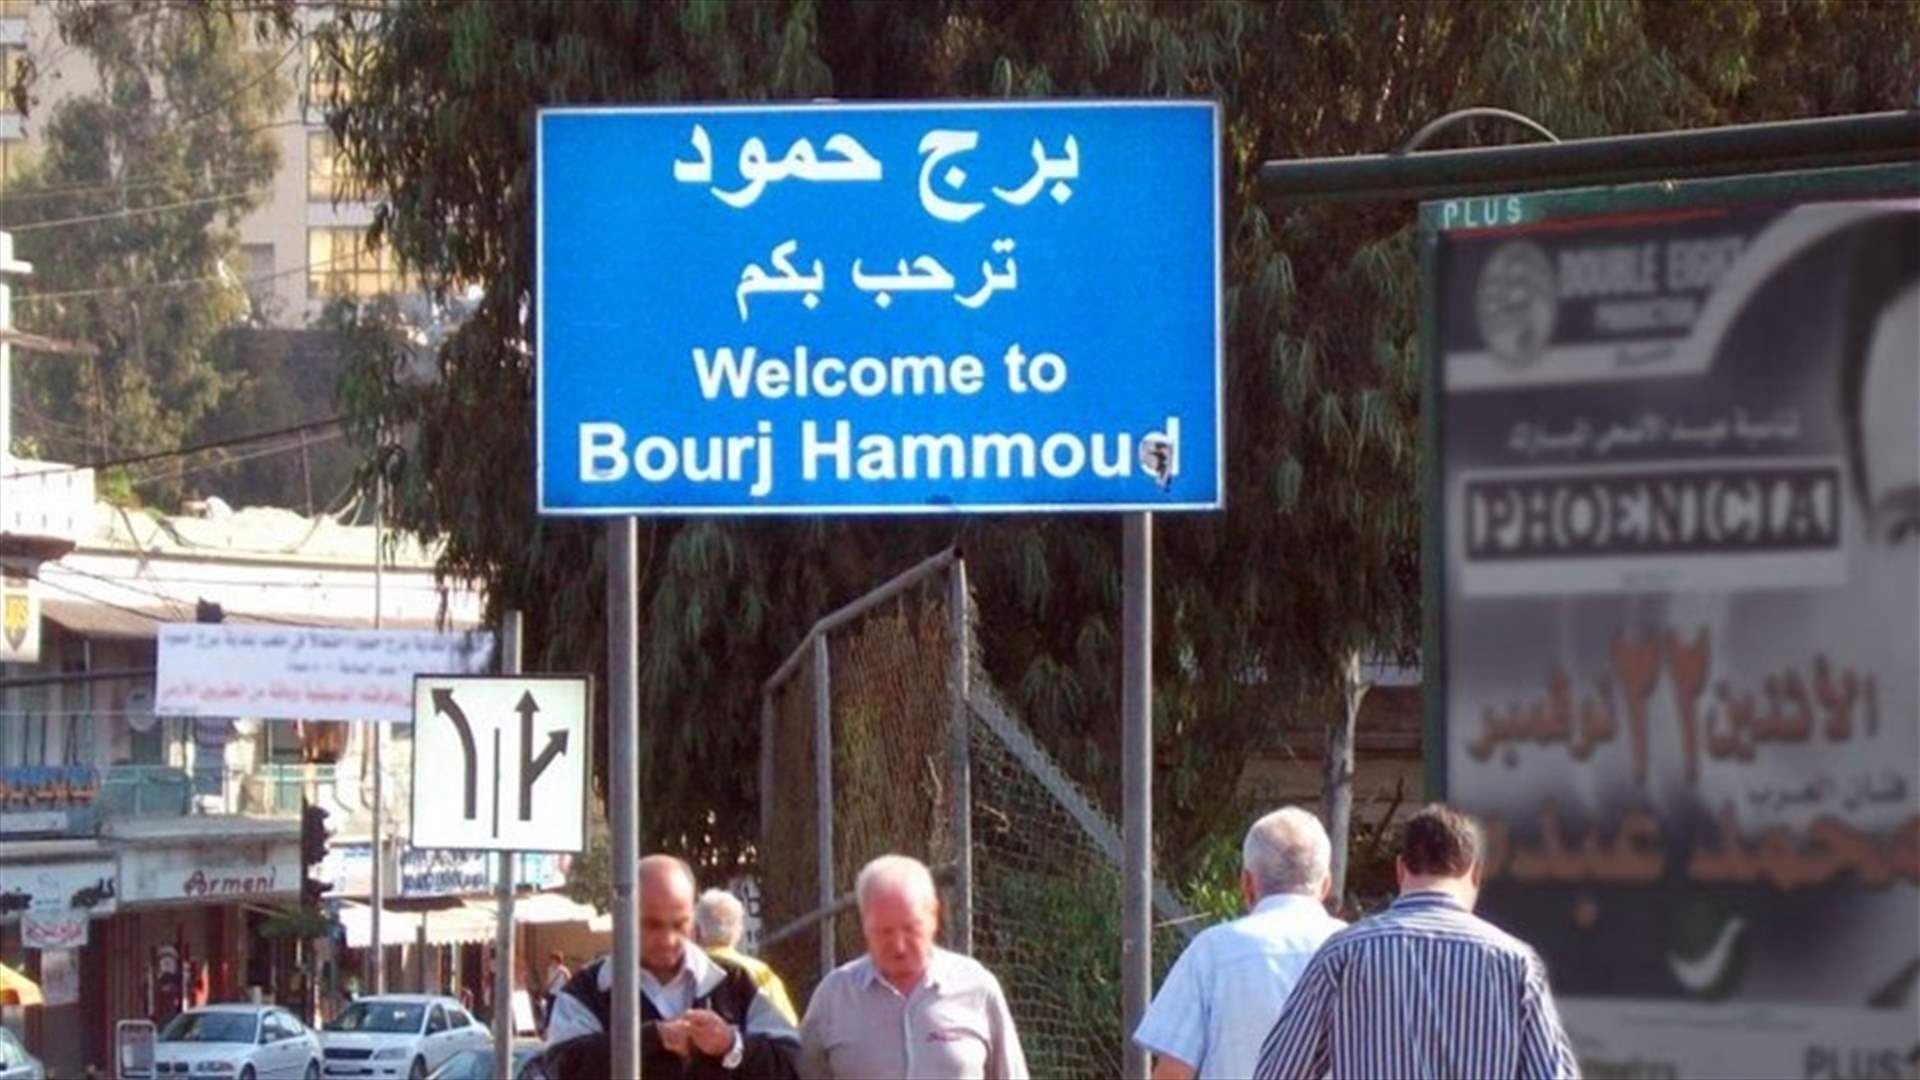 Man attempts suicide in Bourj Hammoud